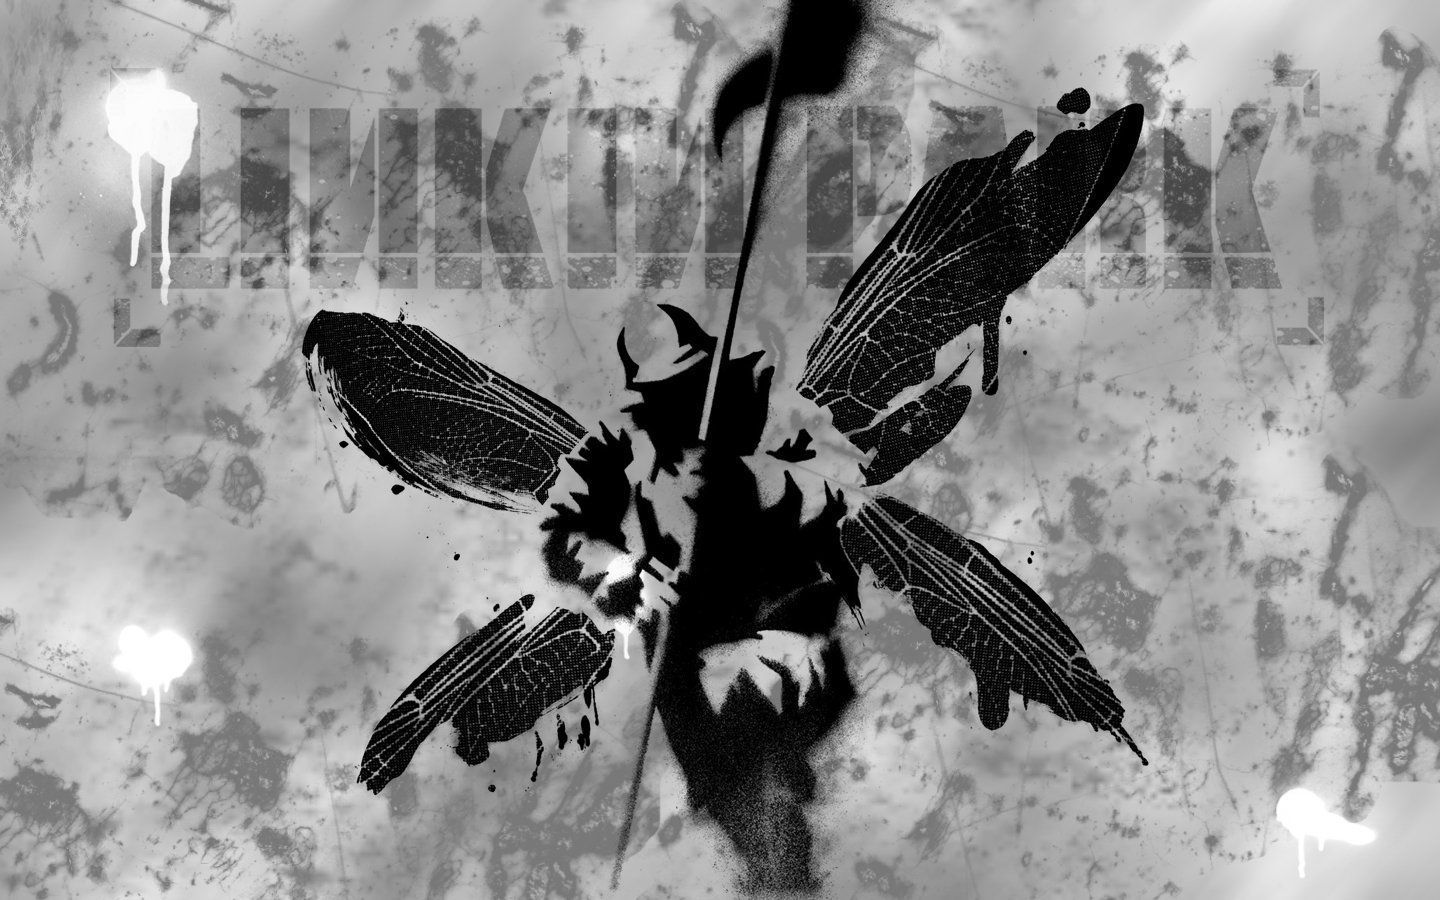 Linkin Park Hybrid wallpaper 1440x900 251906 WallpaperUP